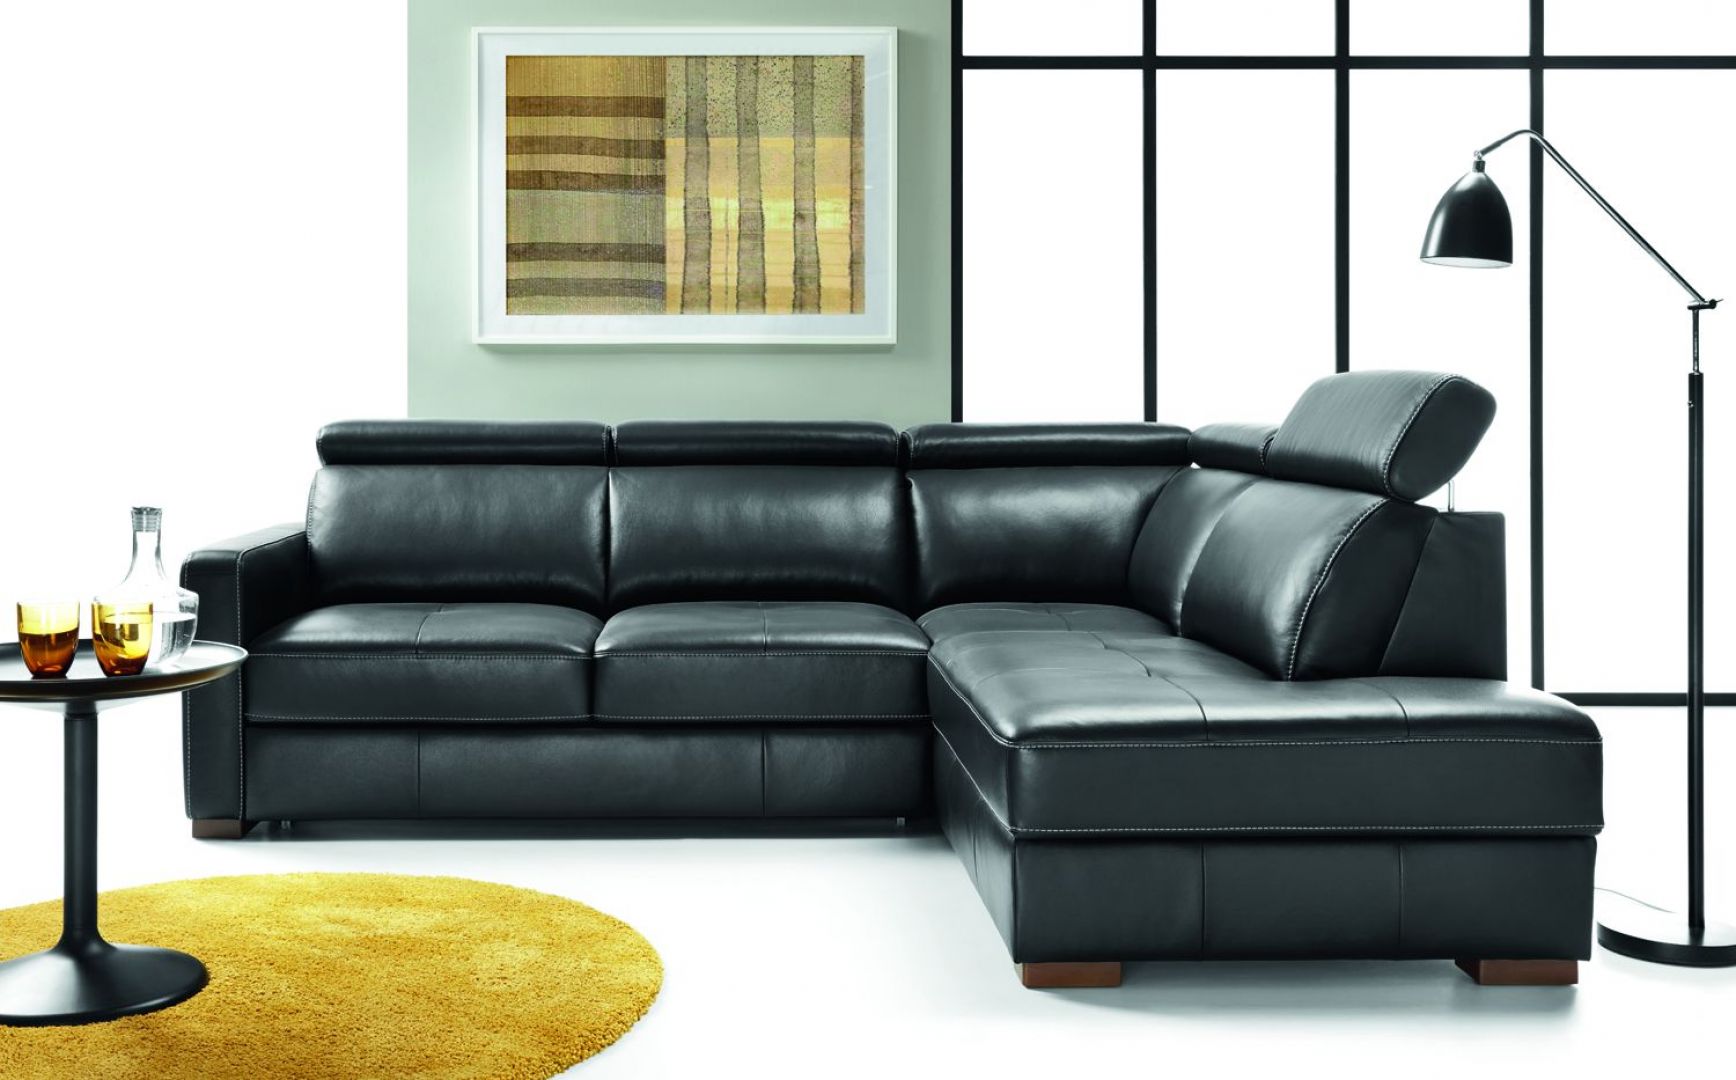 Modułowa kolekcja Ergo wyróżnia się zgrabną formą brył oraz ergonomicznym kształtem układów. Fot. Etap Sofa 